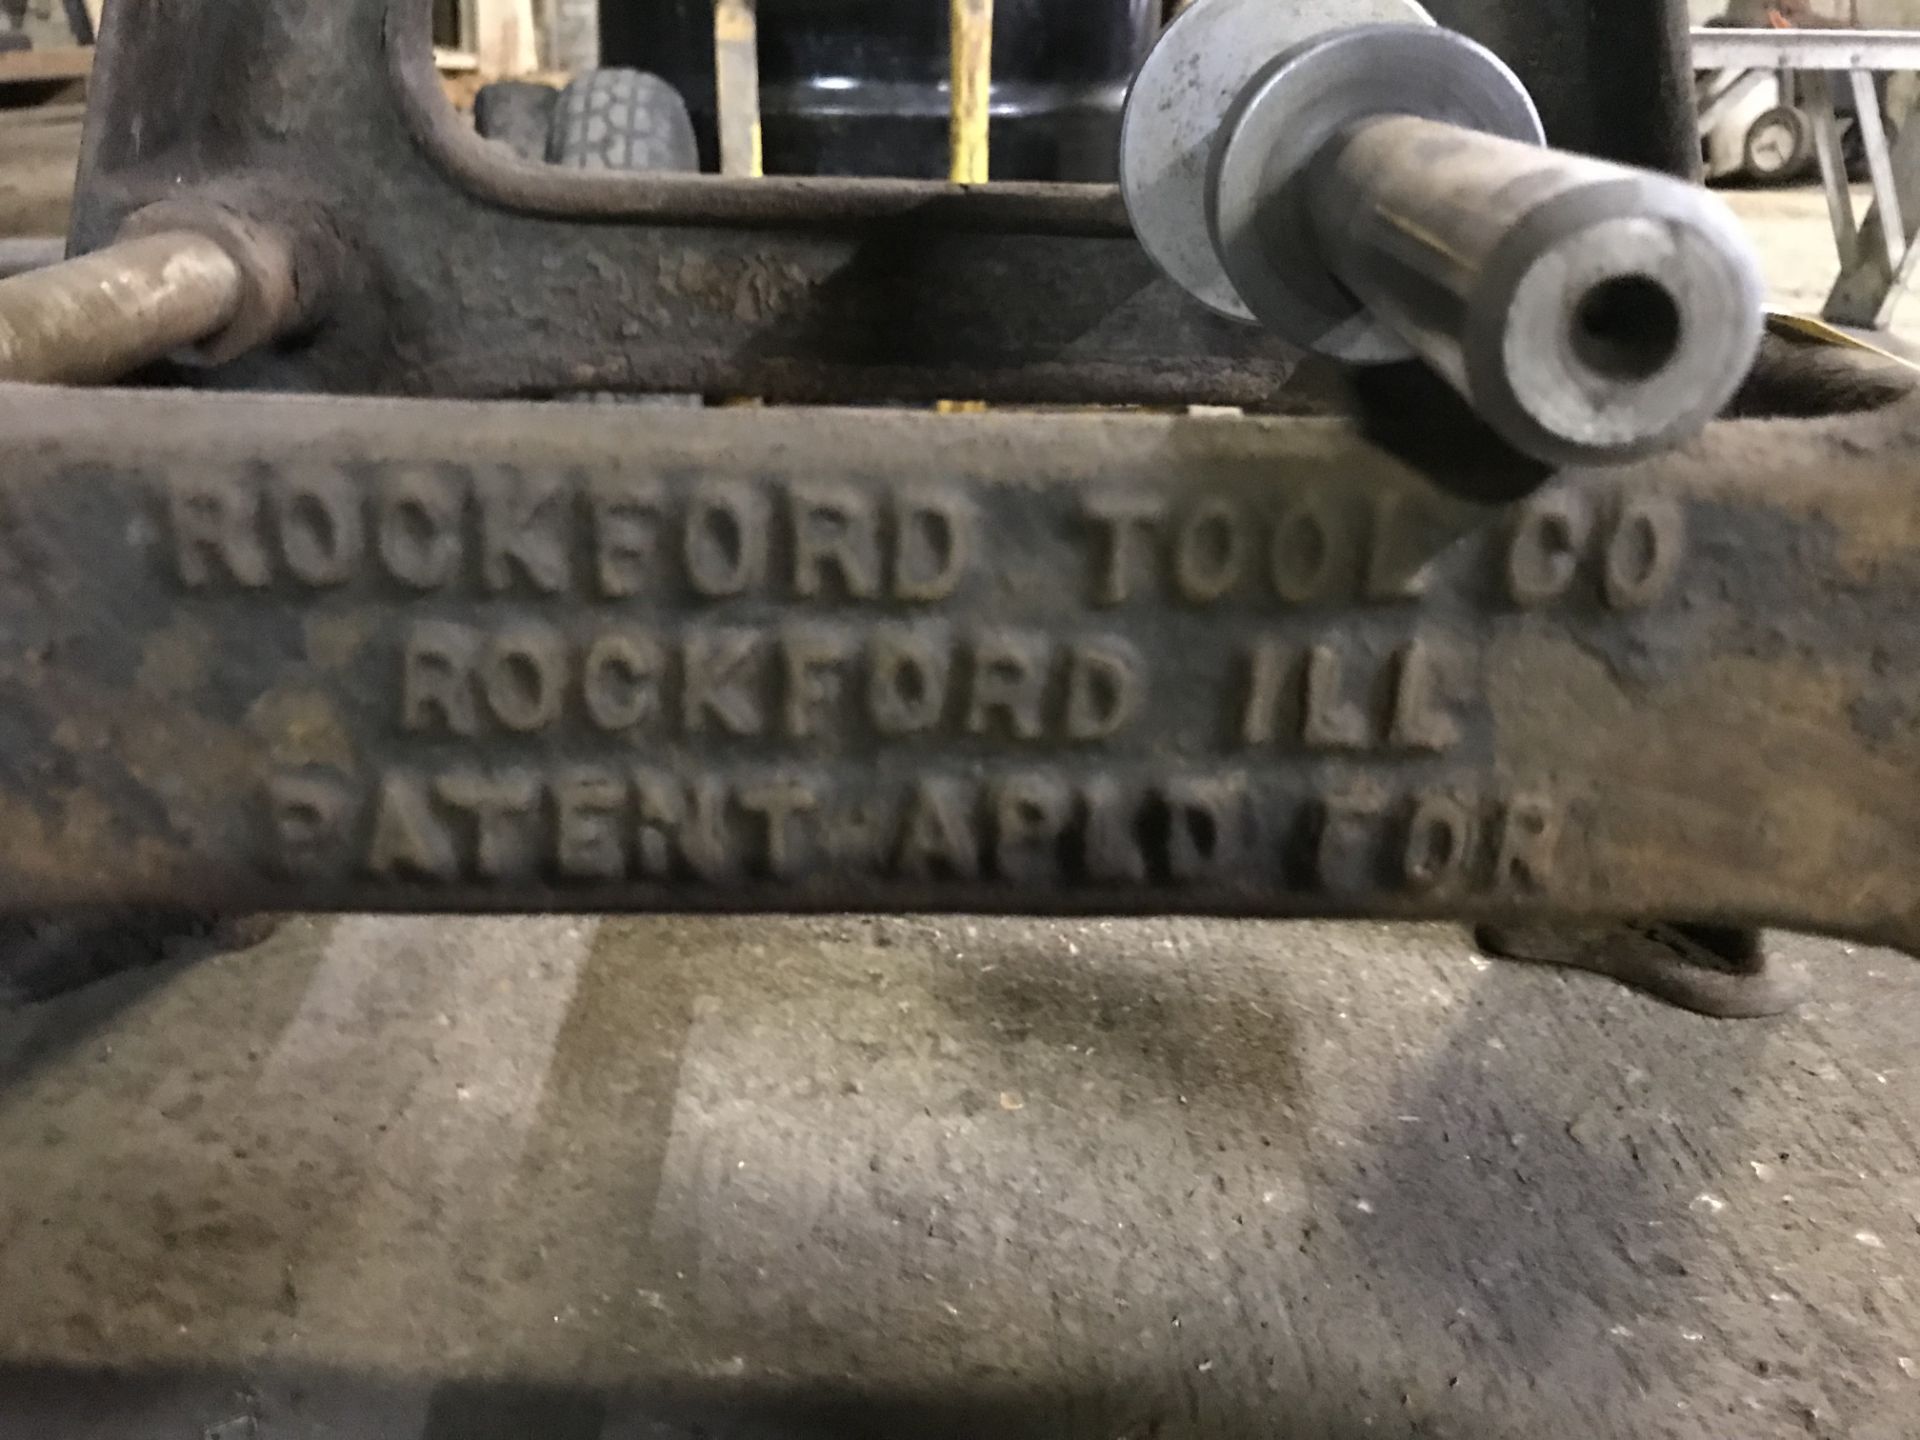 Rockford Tool Co. Balancer for Lathe/Grinder - Image 3 of 4